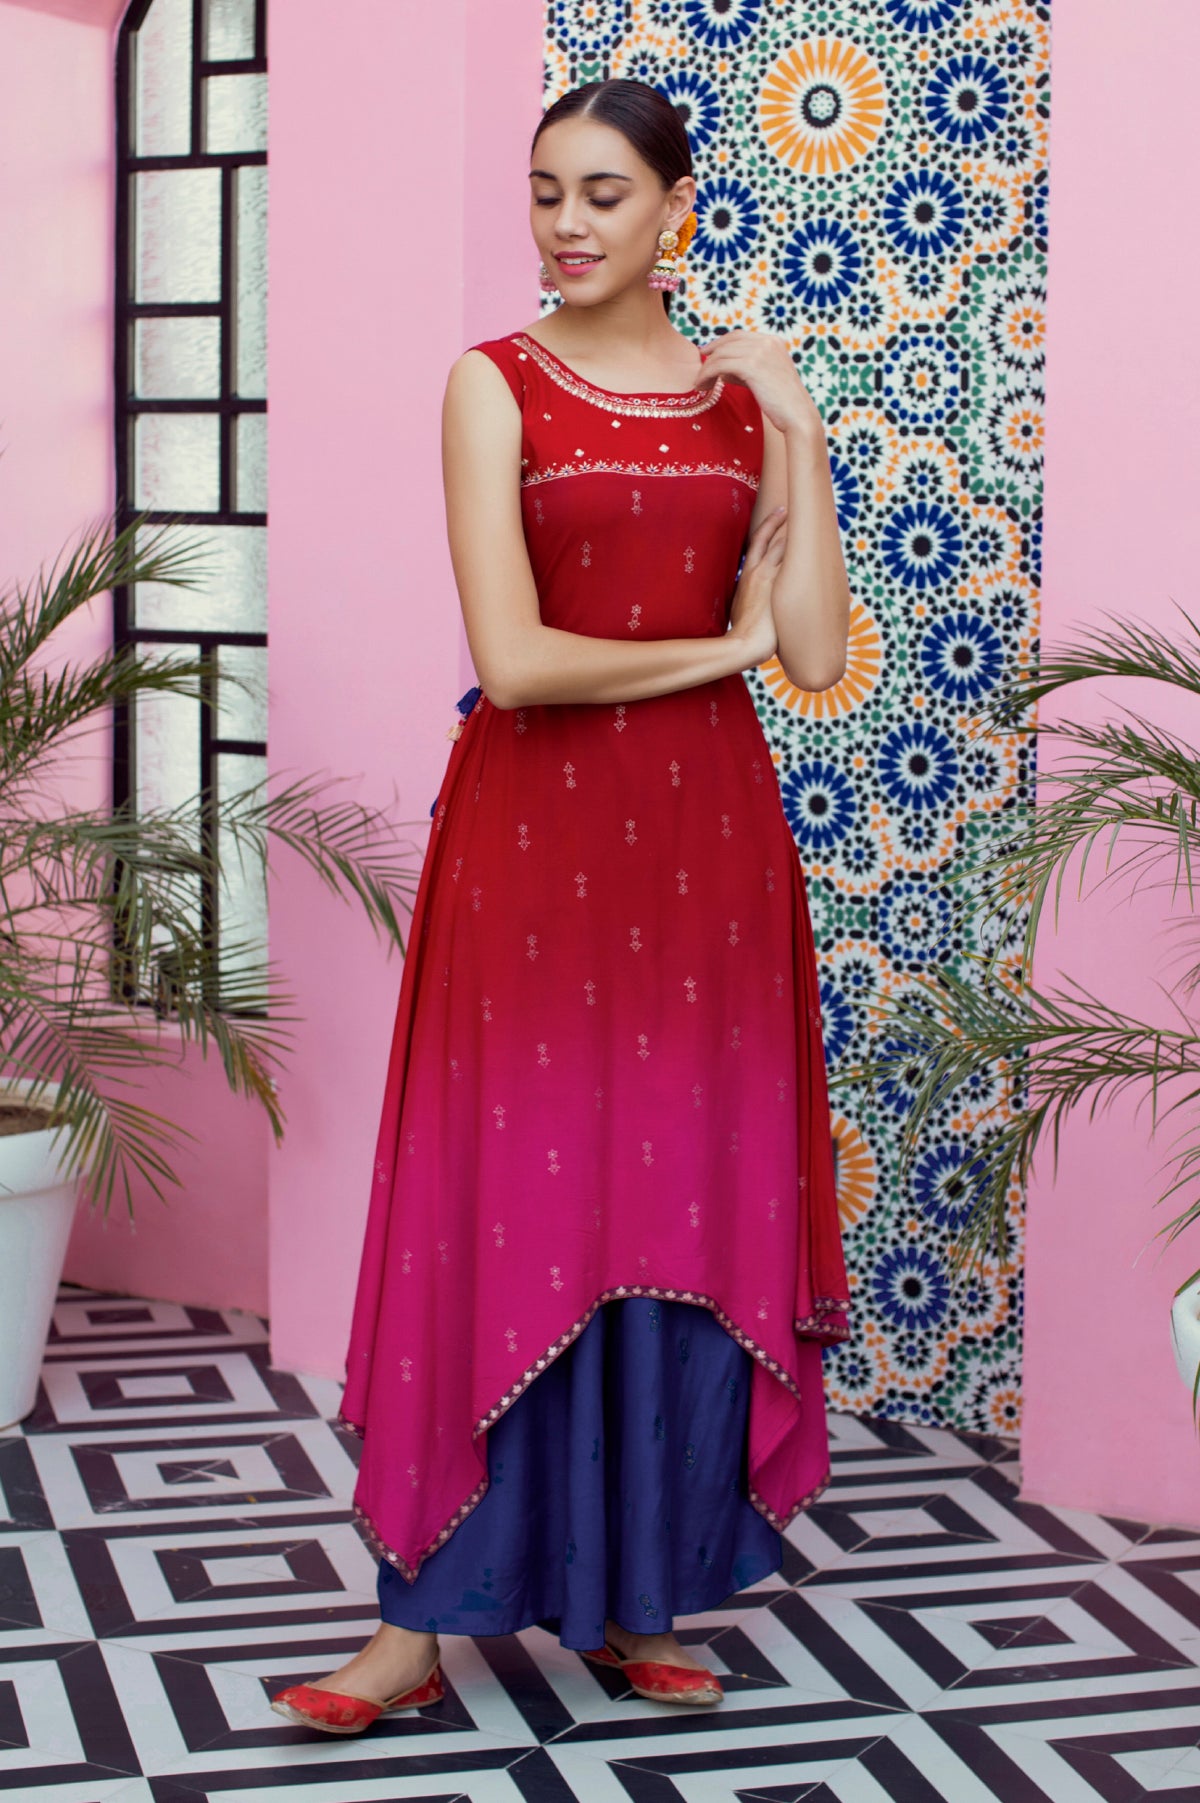 Neerus Ramzan Bazaar Offer Ad - Advert Gallery | Formal dresses long,  Wedding background wallpaper, Indian ethnic